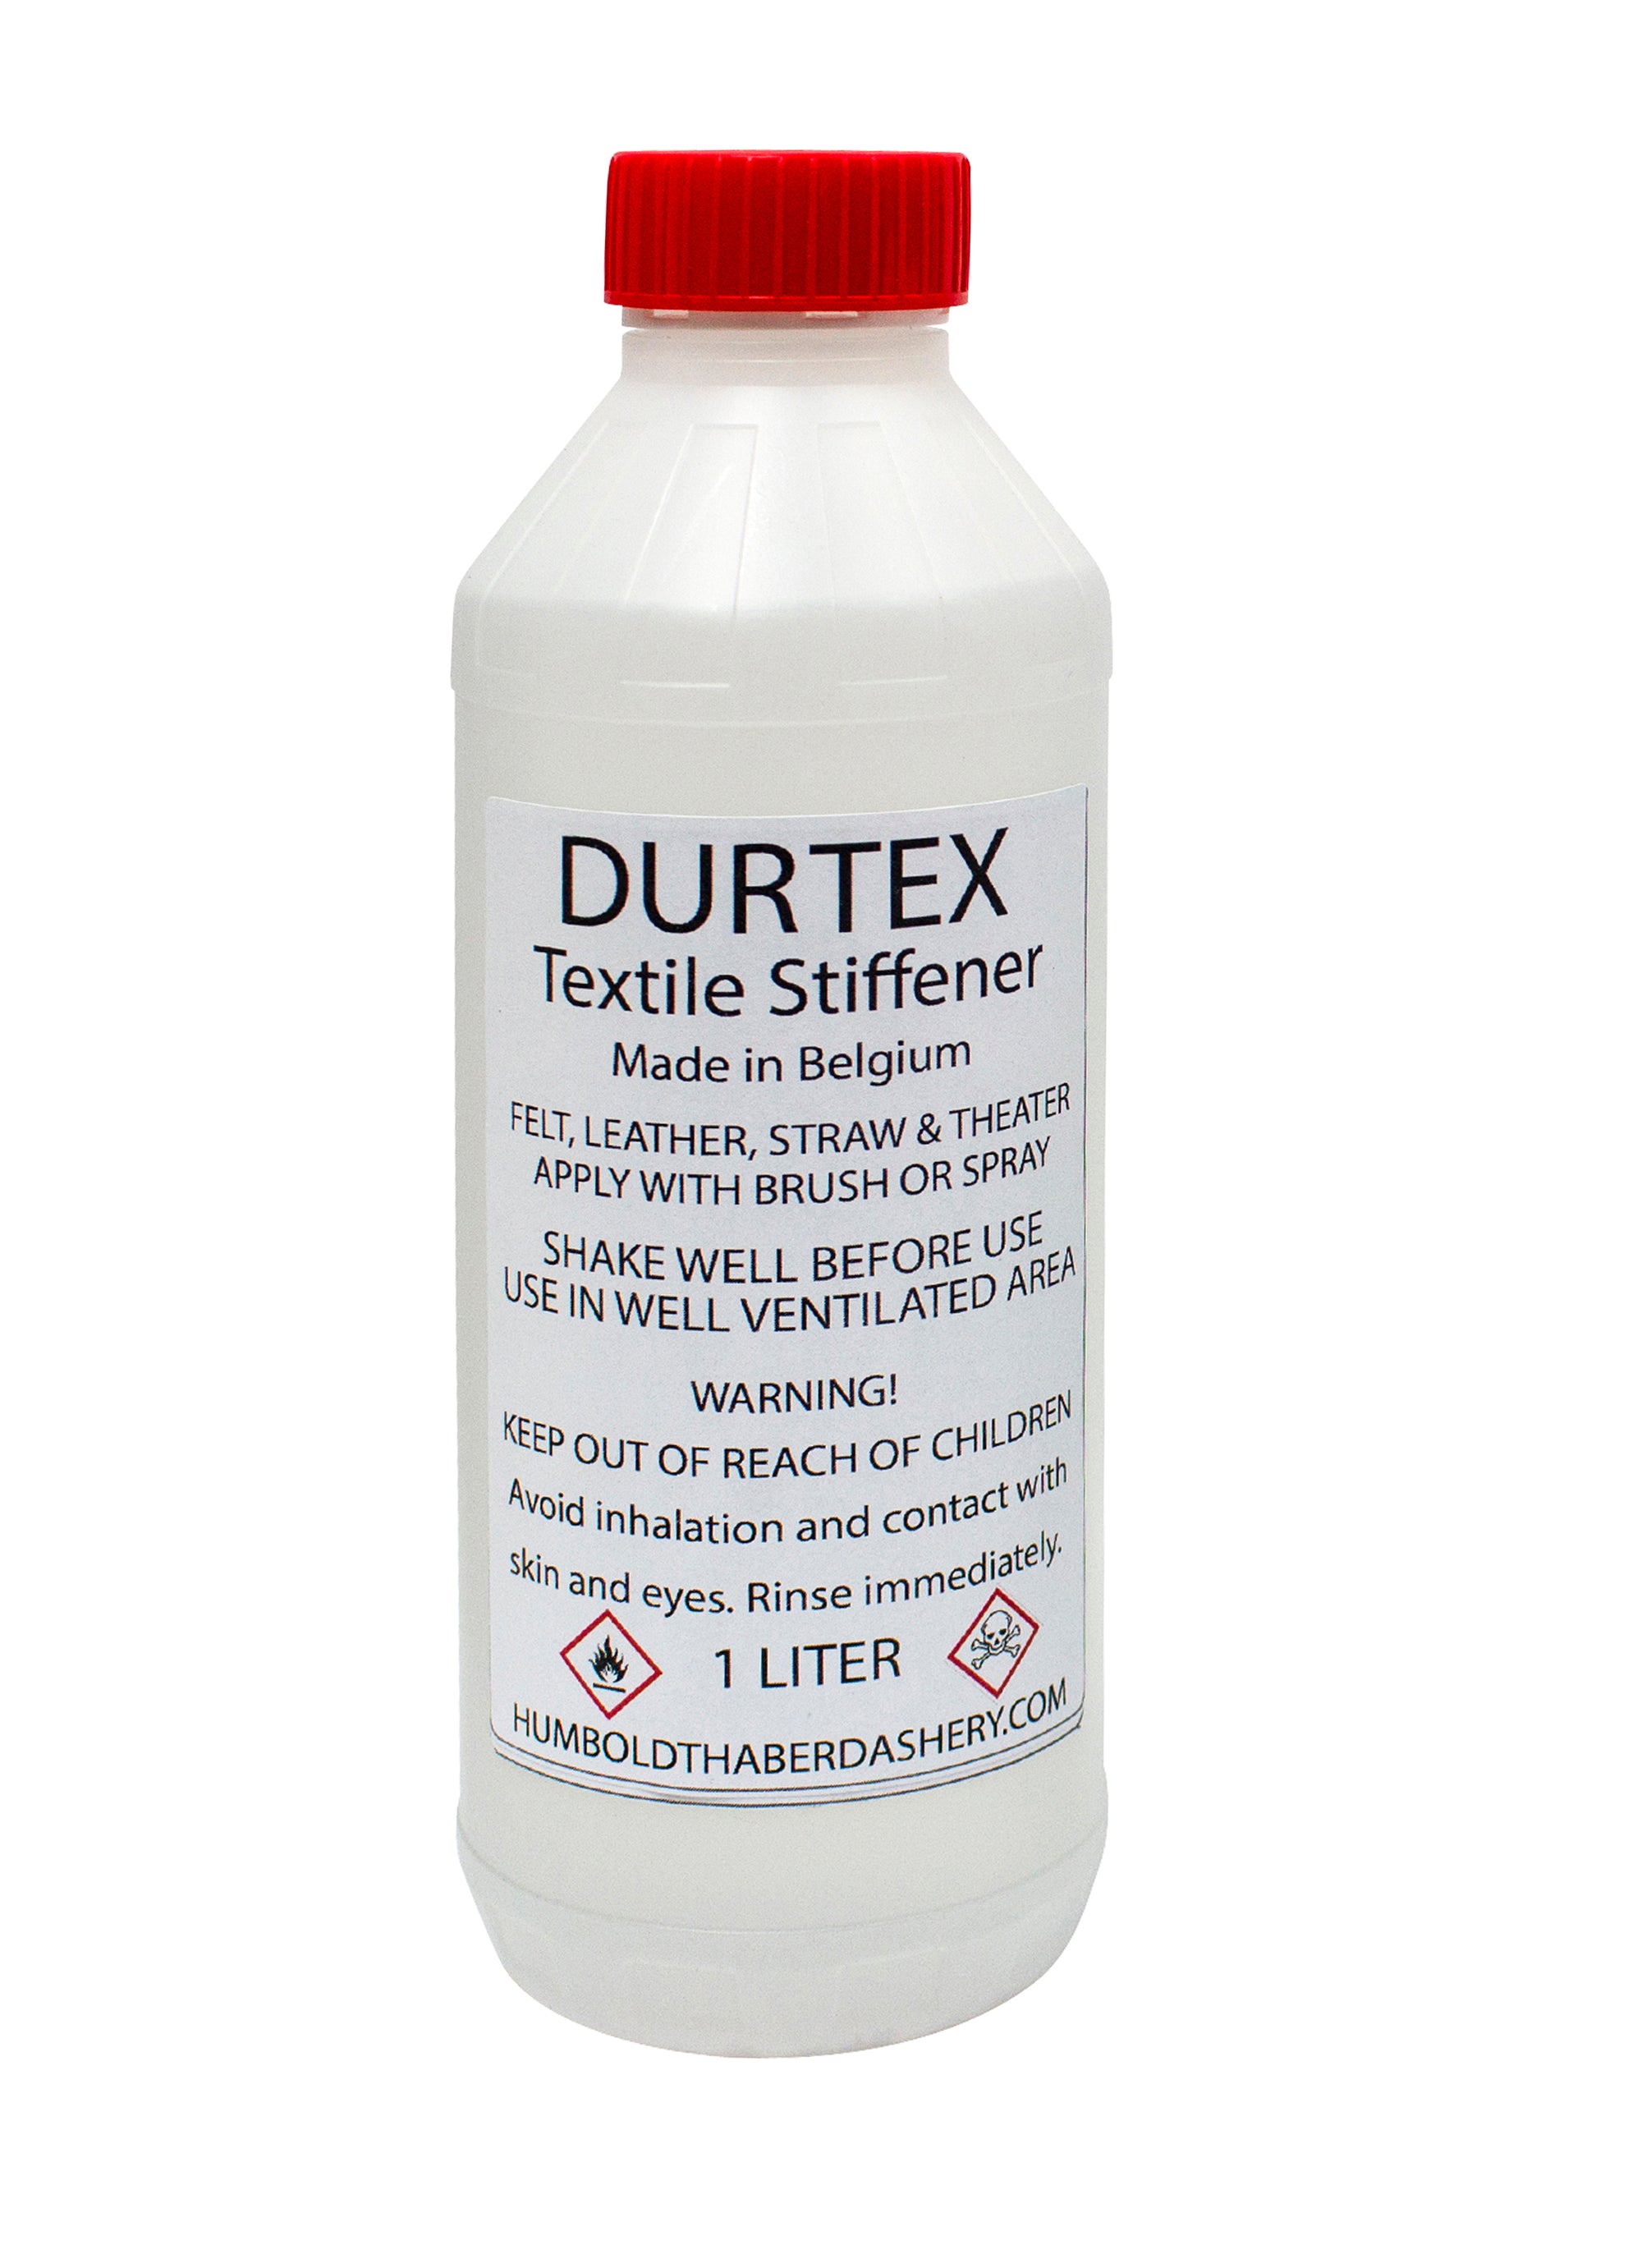 Durtex Textile Stiffener and Waterproofer